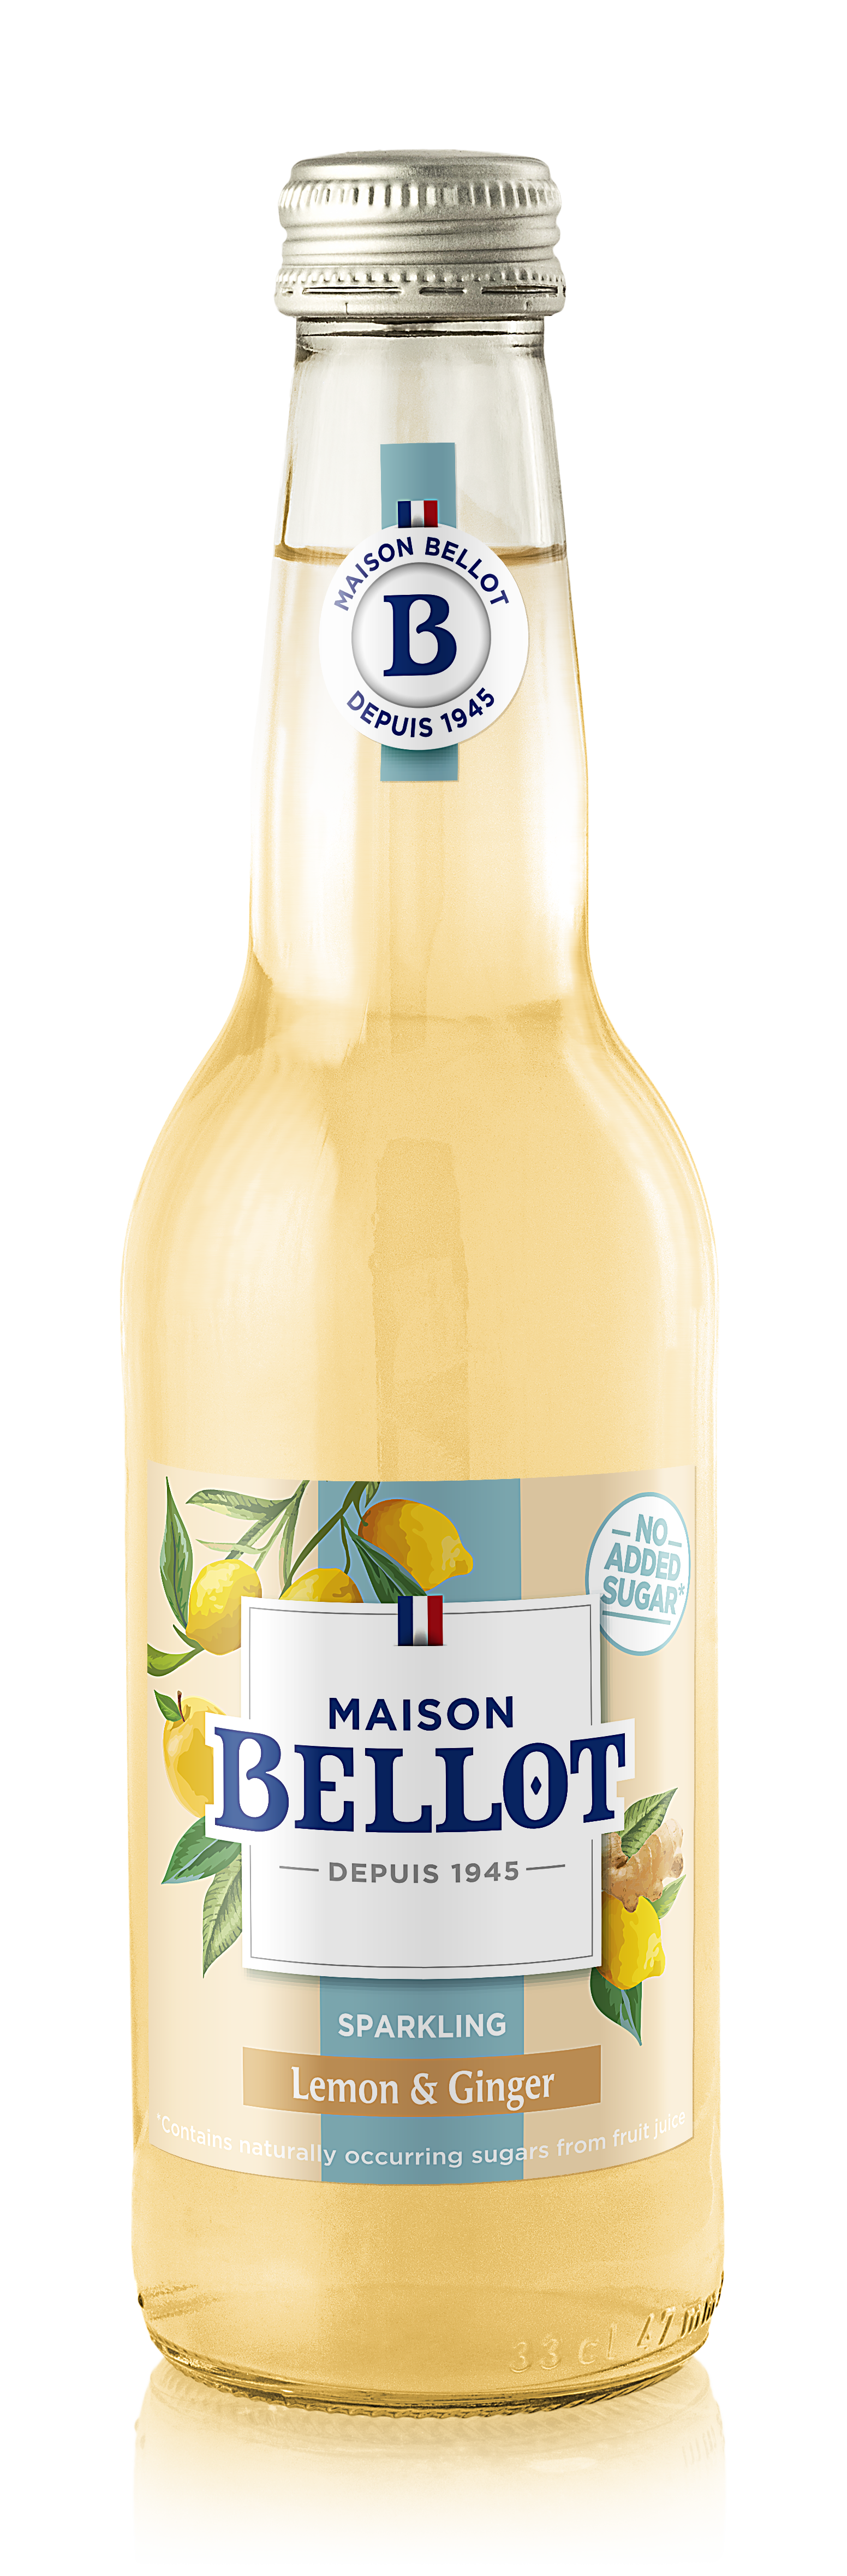 Bellot Citron/Gingembre Premium Limonade 12x33CL BV